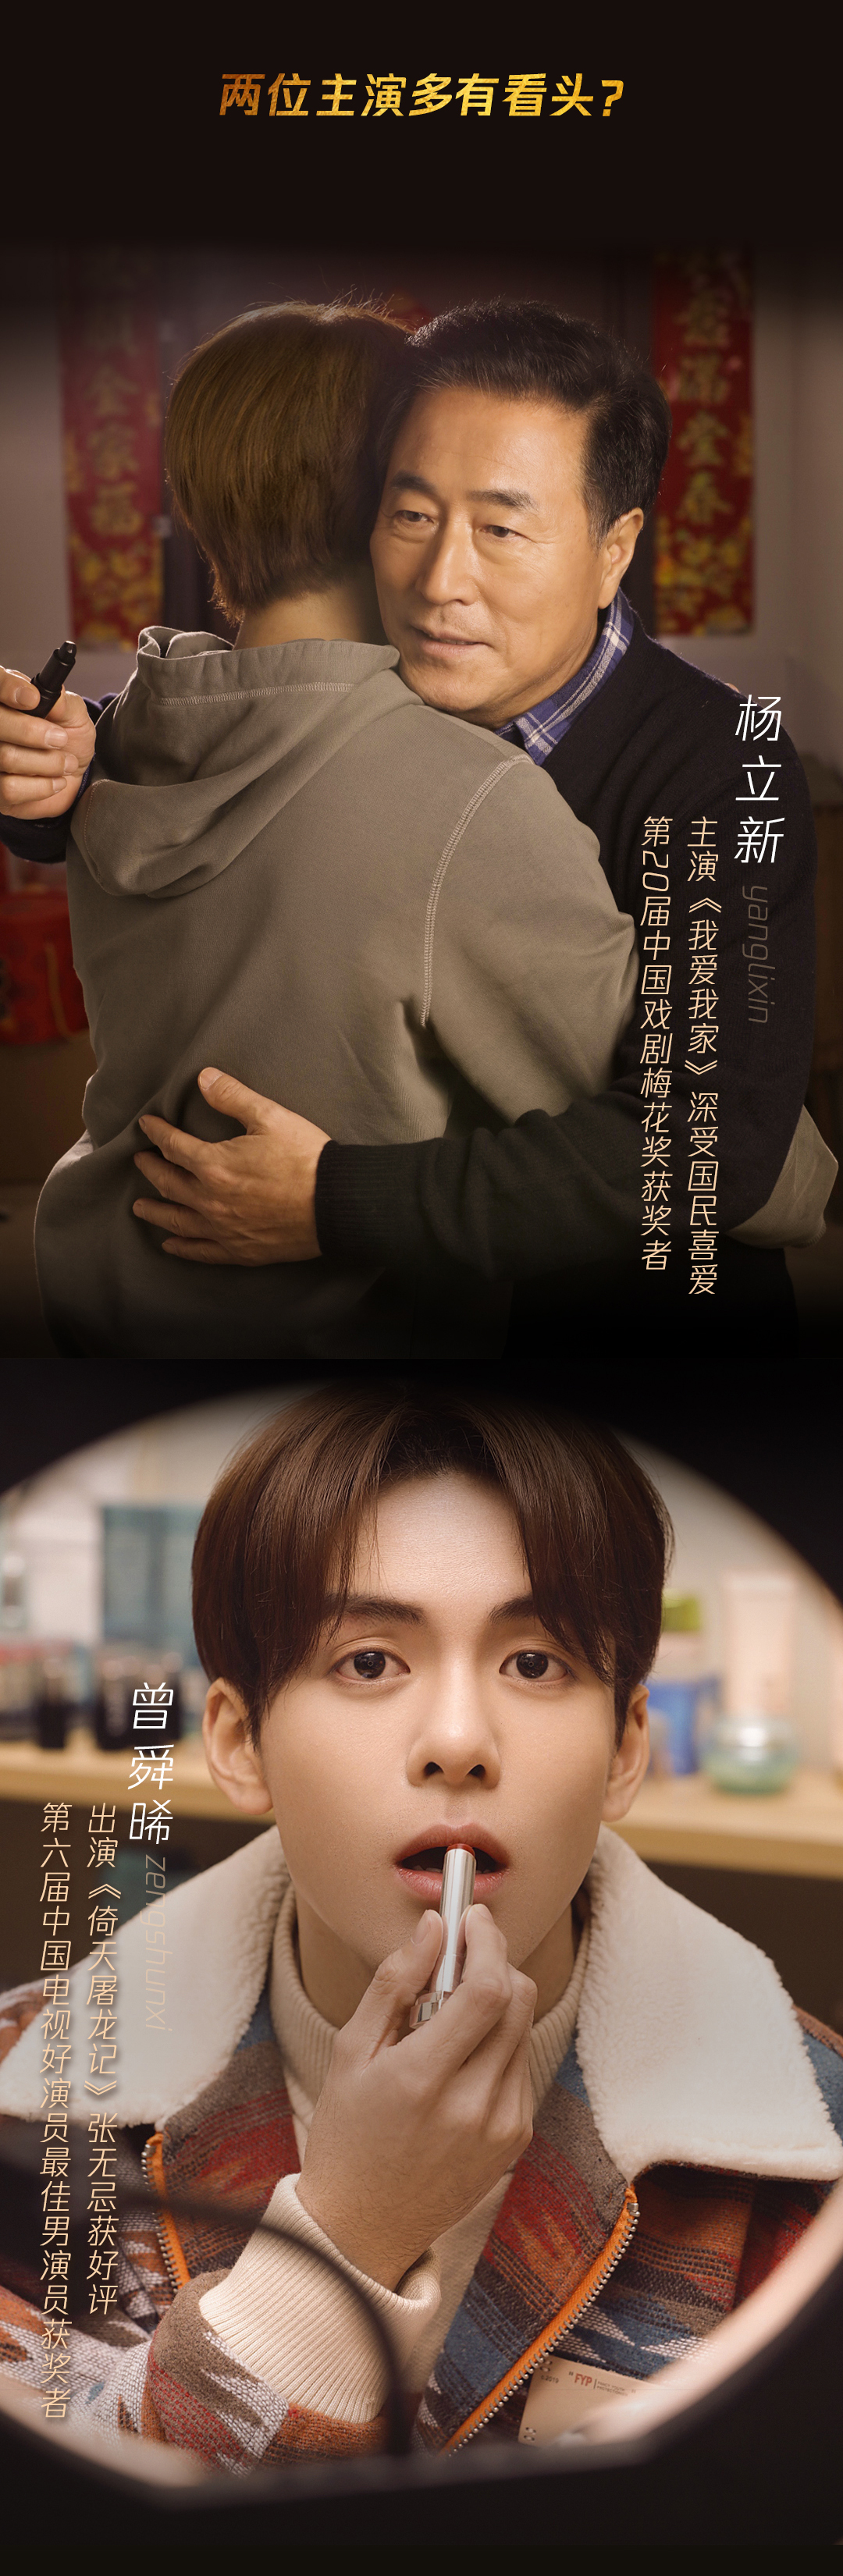 腾讯qi牌2020新春微电影《三十》预告片抢先看，心里的话、牌局上说